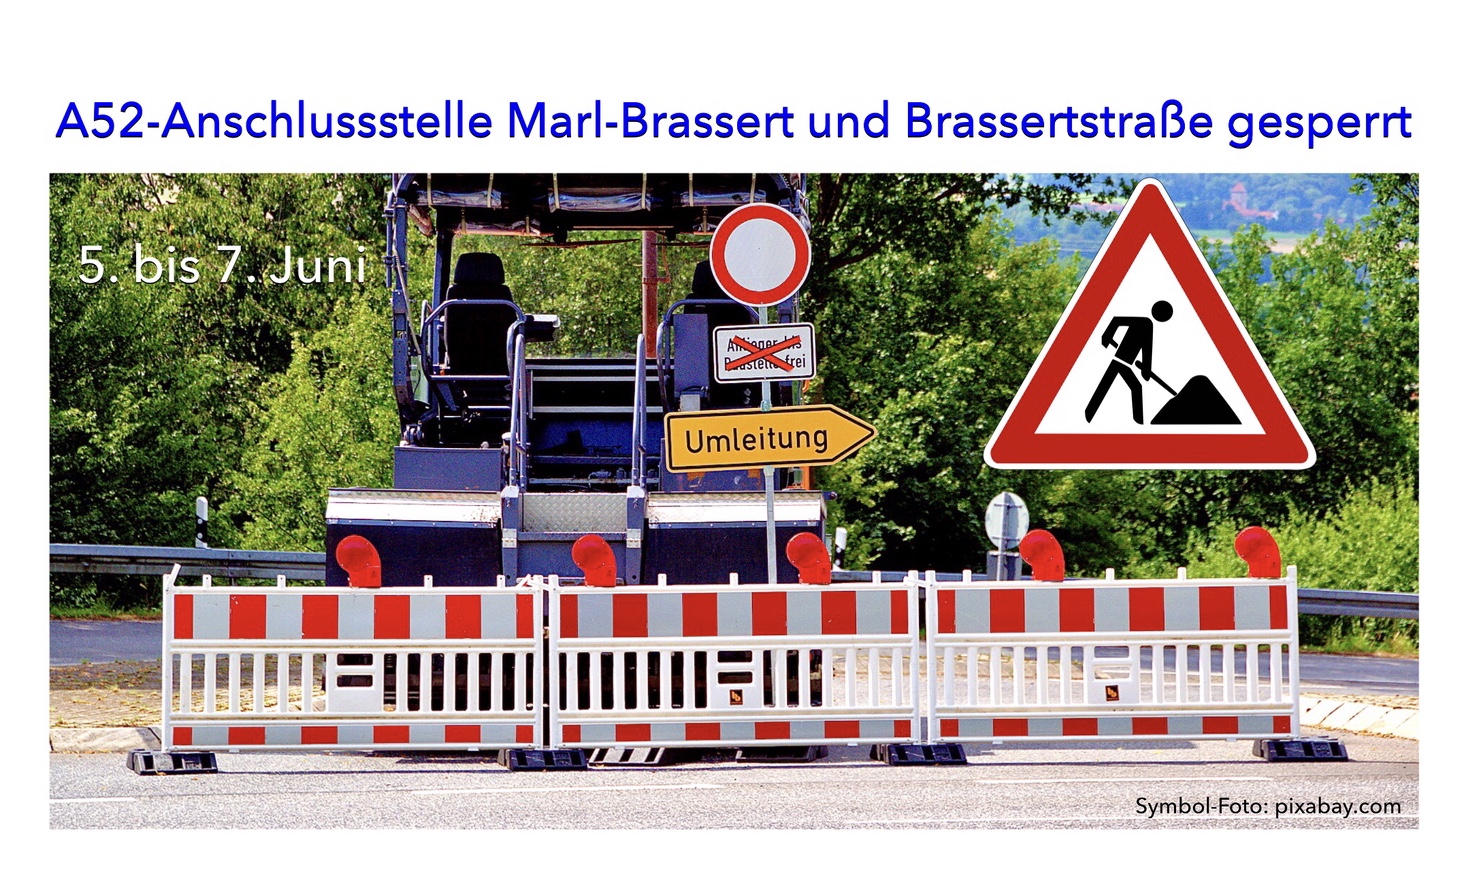 A52-Anschlussstelle Marl-Brassert und Brassertstraße (K6) vom 5. bis zum 7. Juni gesperrt